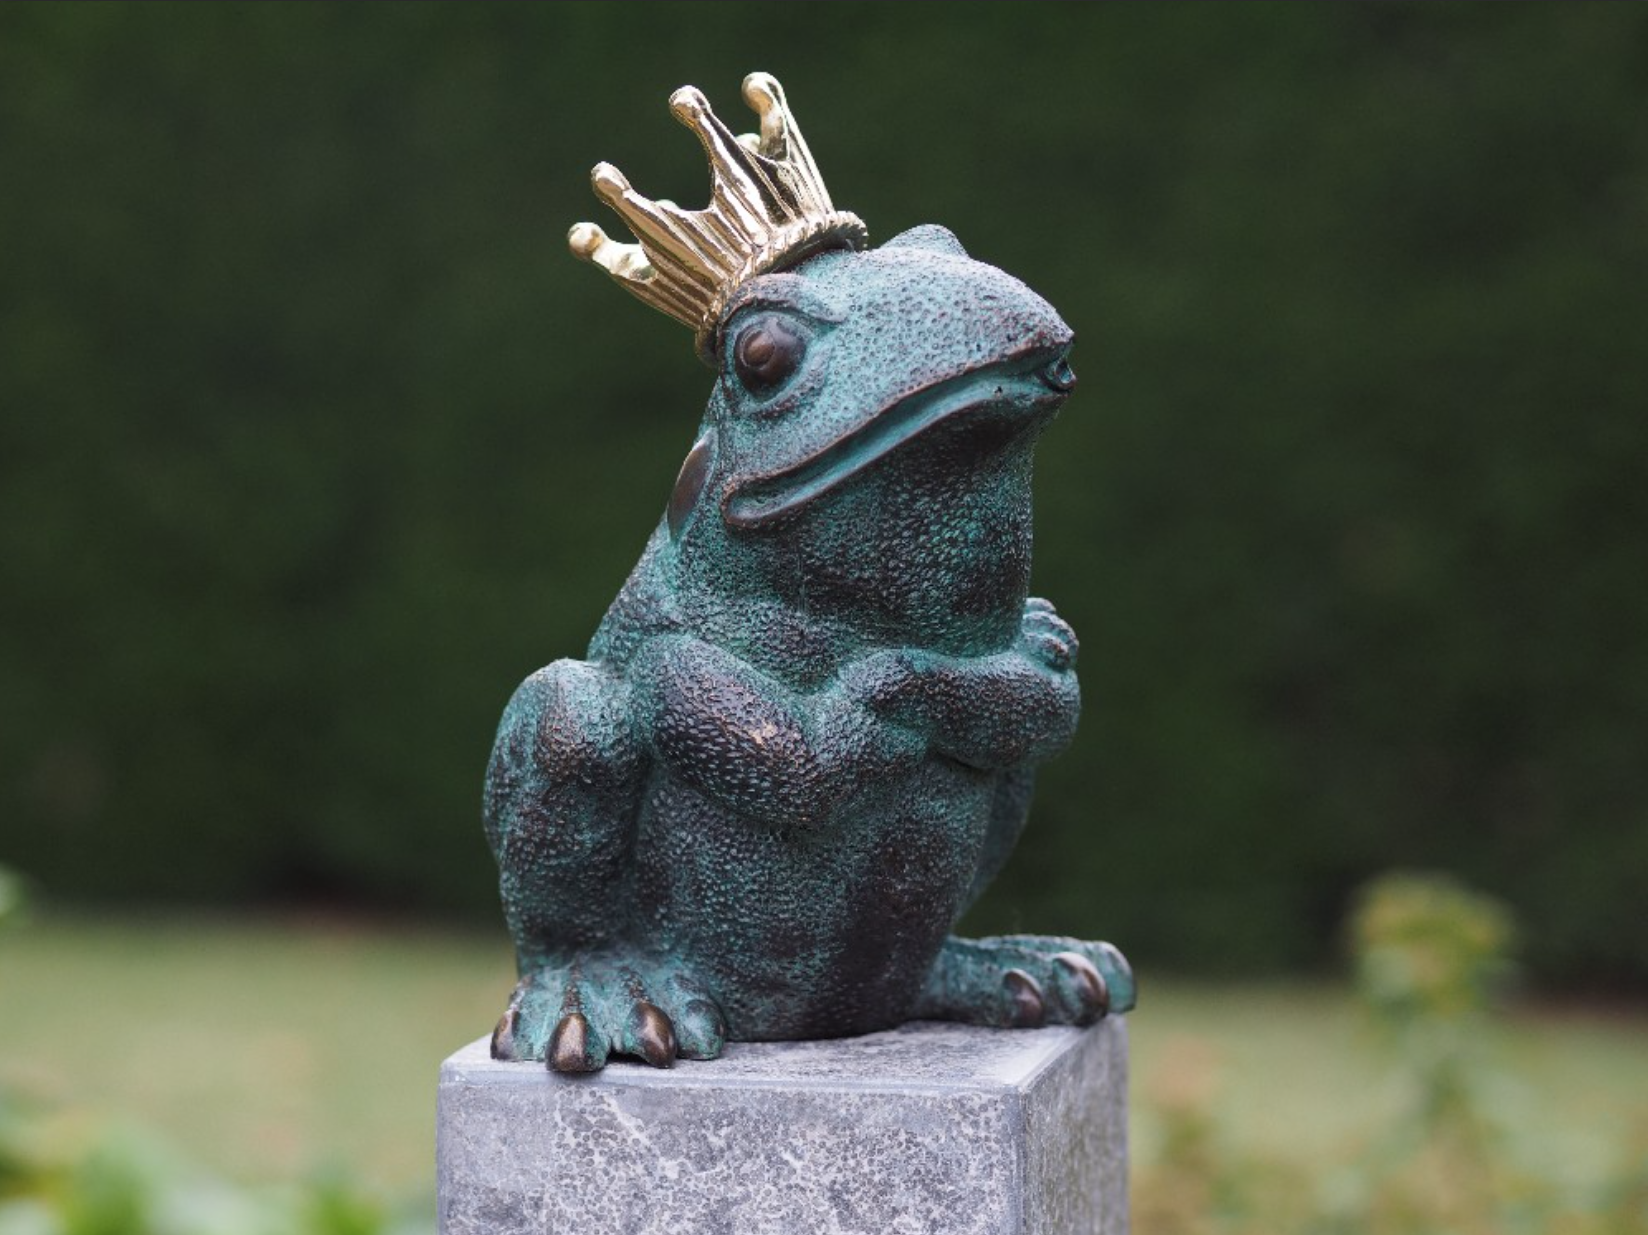 Bronze frog with crown - Bronze animal sculptures - Bronze sculptures -  Flowerfeldt